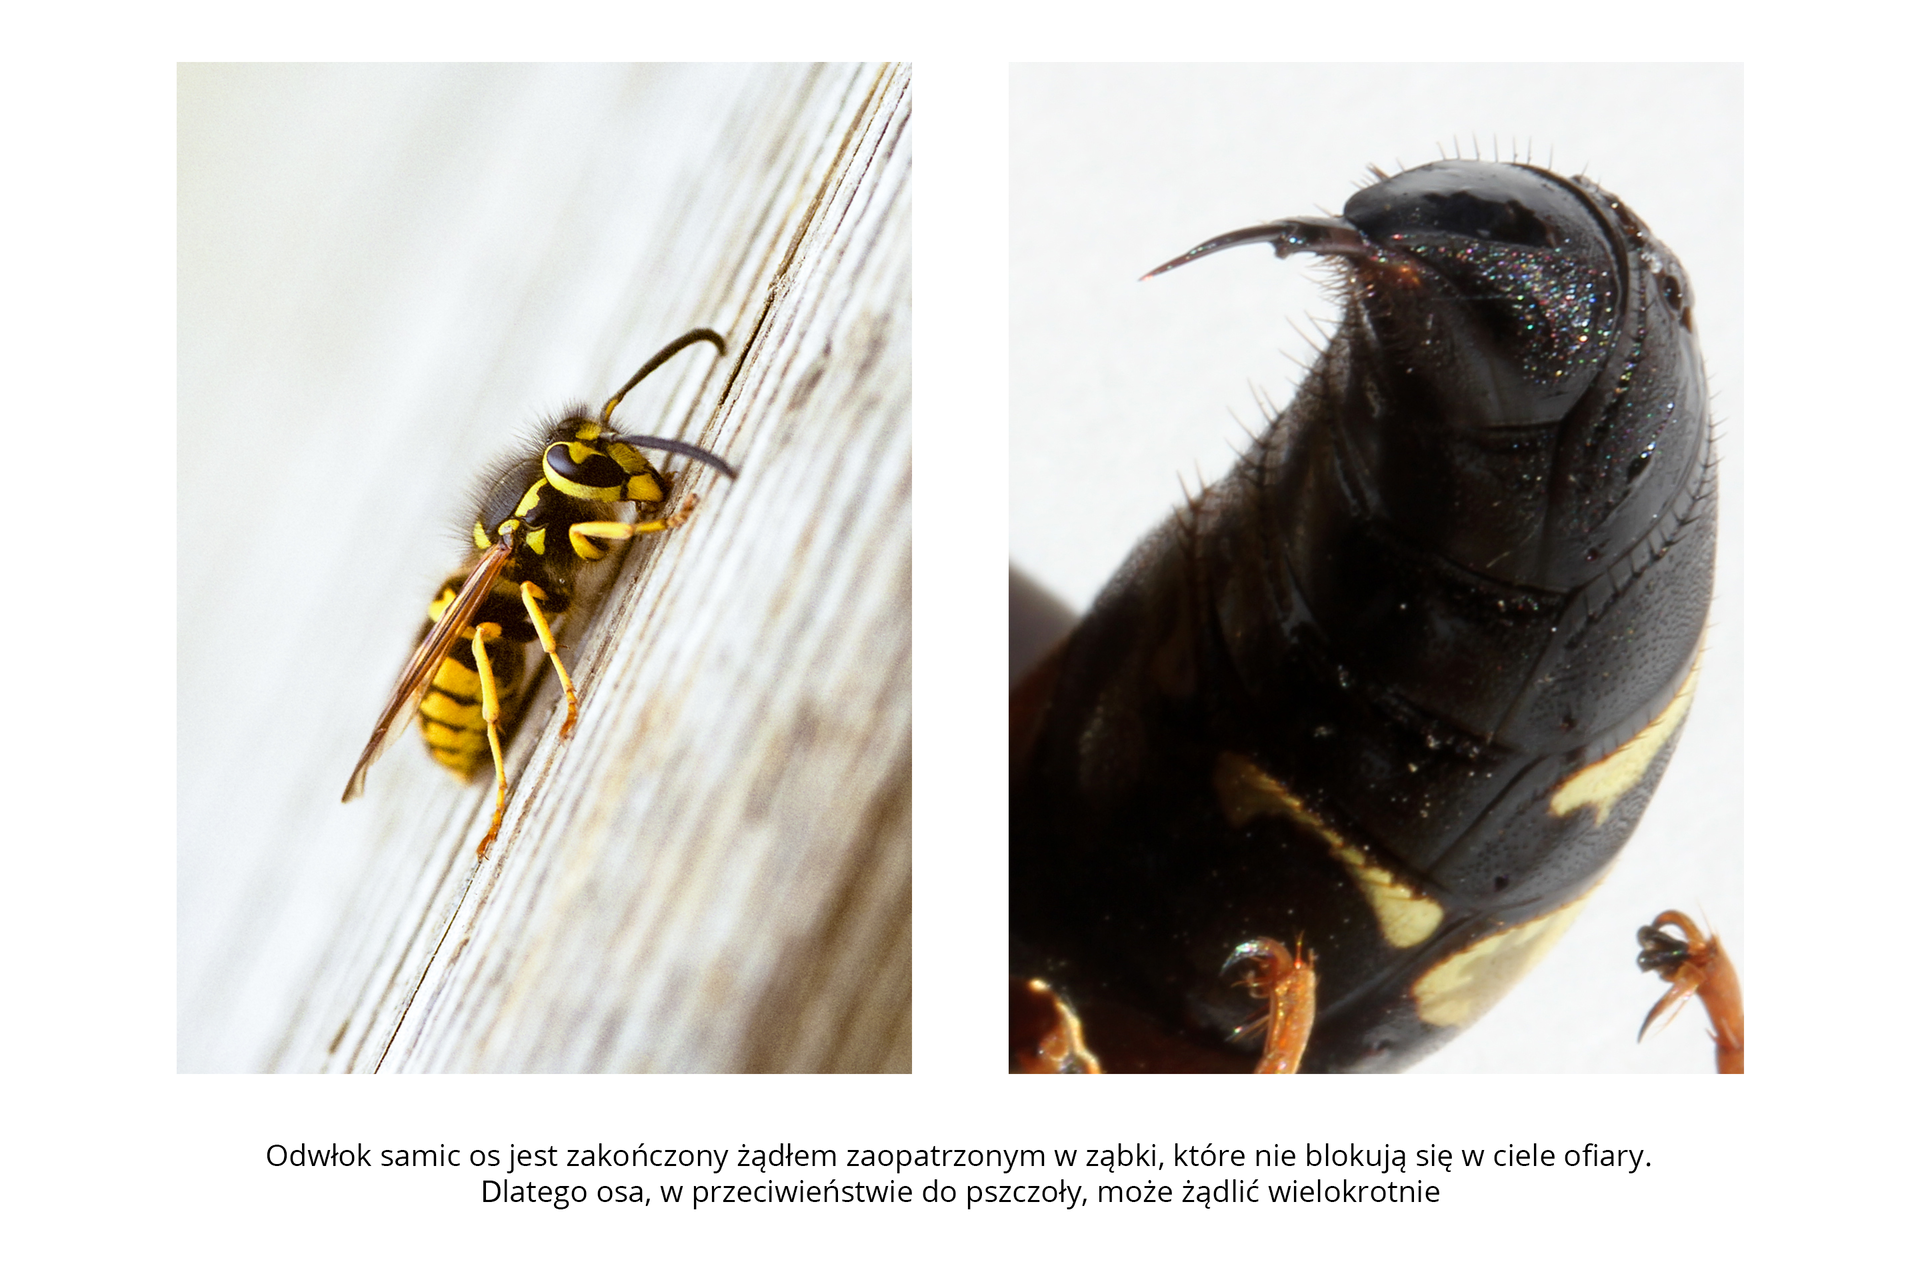 W galerii znajdują się pary fotografii, przedstawiające różne owady i ich larwy. Fotografia z lewej przedstawia ukośnie zbliżenie czarno – żółtej osy. Siedzi na drewnianej, malowanej, spękanej powierzchni, głowa w prawo do góry. Długie brązowe czułki opuszczone. U nasady czułków duże, owalne, czarne oczy. Tułów owłosiony. Skrzydła błoniaste wąskie, jasnobrązowe, złożone wzdłuż ciała. Fotografia z prawej przedstawia duże zbliżenie czarnego odwłoka osy. Odwłok ukazany od spodu, porośnięty włoskami. Na końcu cienkie żądło, zagięte w lewo.